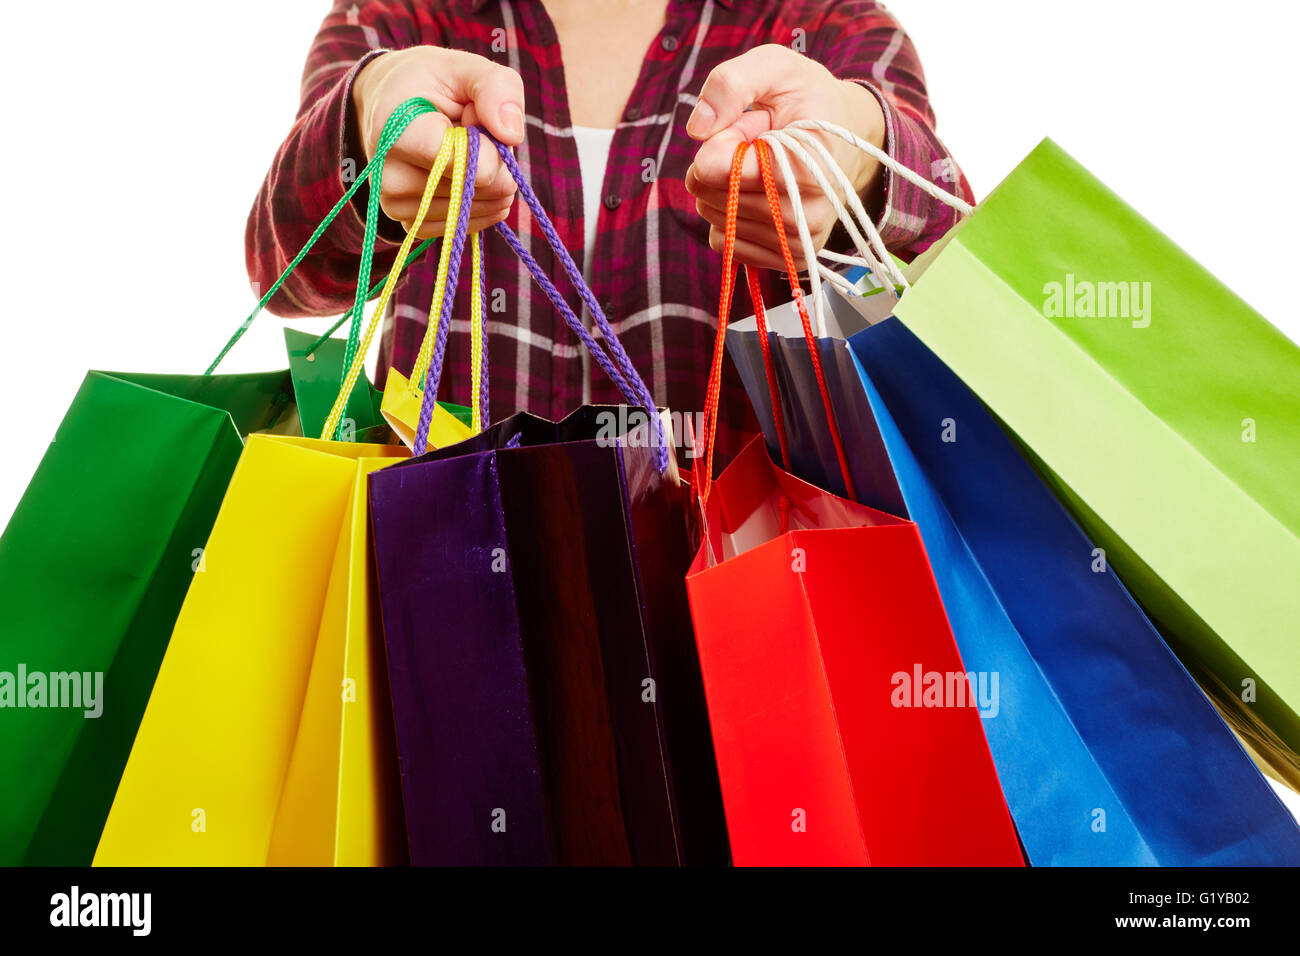 Les mains d'une femme transporter beaucoup de colorful shopping bags Banque D'Images